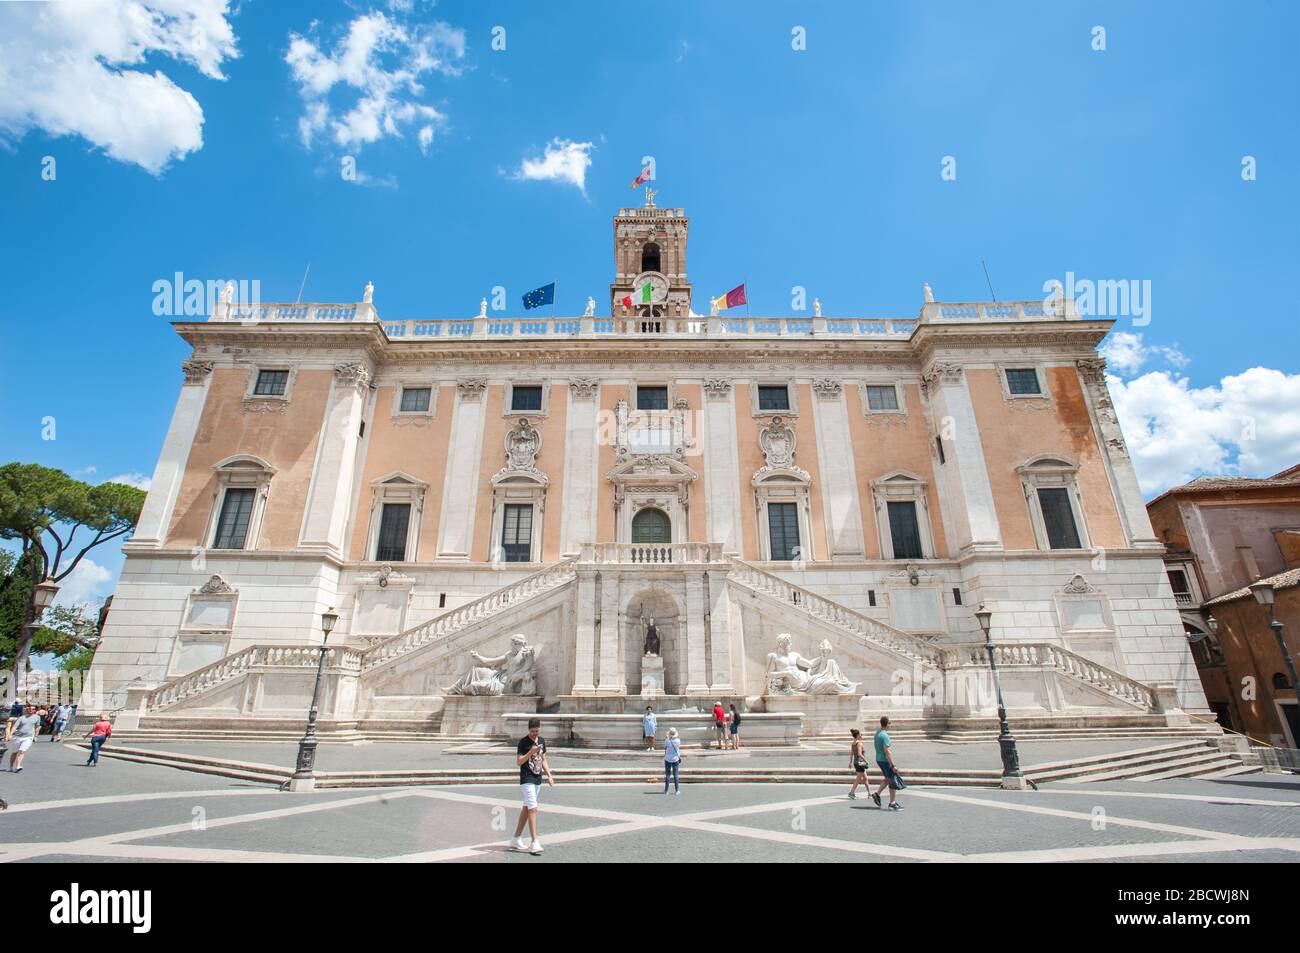 Facade of the Palazzo Senatorio (Senatorial Palace) in the Piazza del Campidoglio on the Capitoline Hill, Rome. Stock Photo